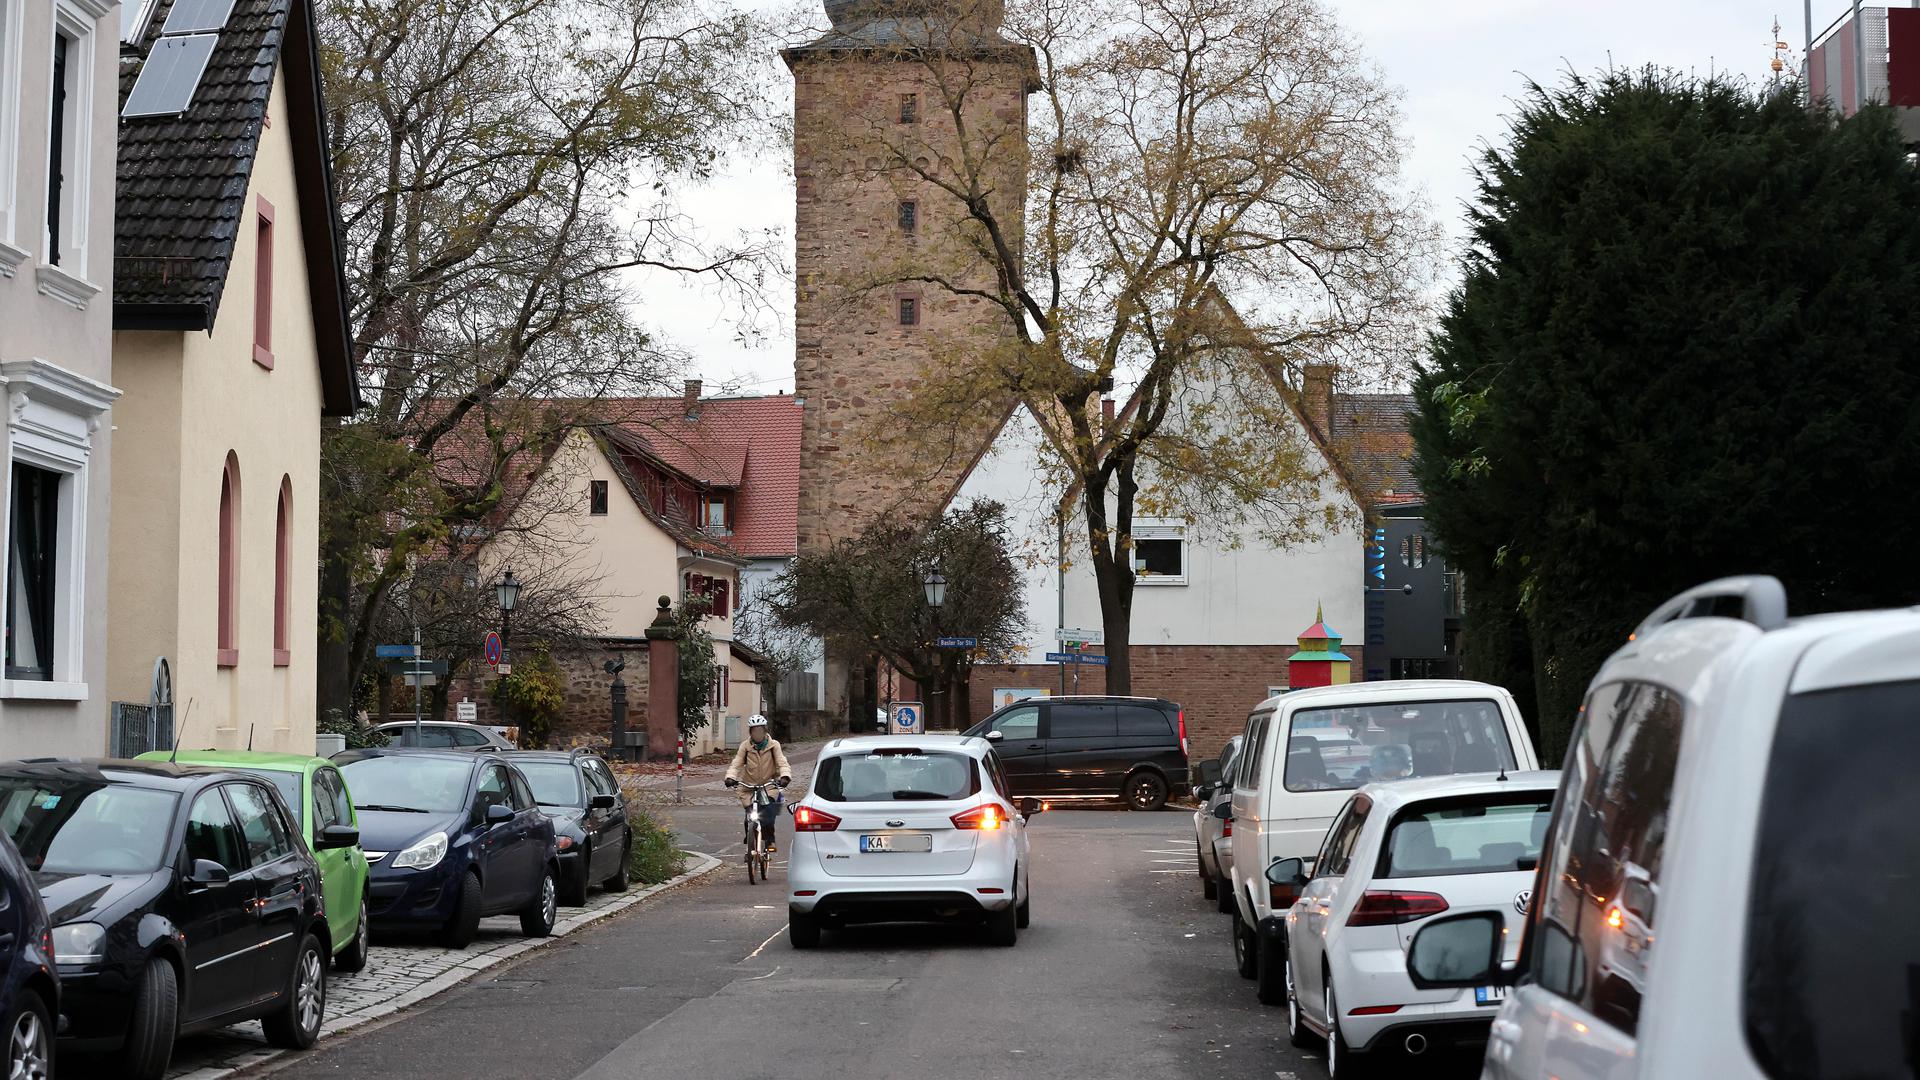 Am 5.12.2022 hat am Rand der Durlacher Altstadt eine Radfahrerin in der Basler-Tor-Straße wenig Platz zwischen parkenden Autos und einem entgegenkommenden Auto.